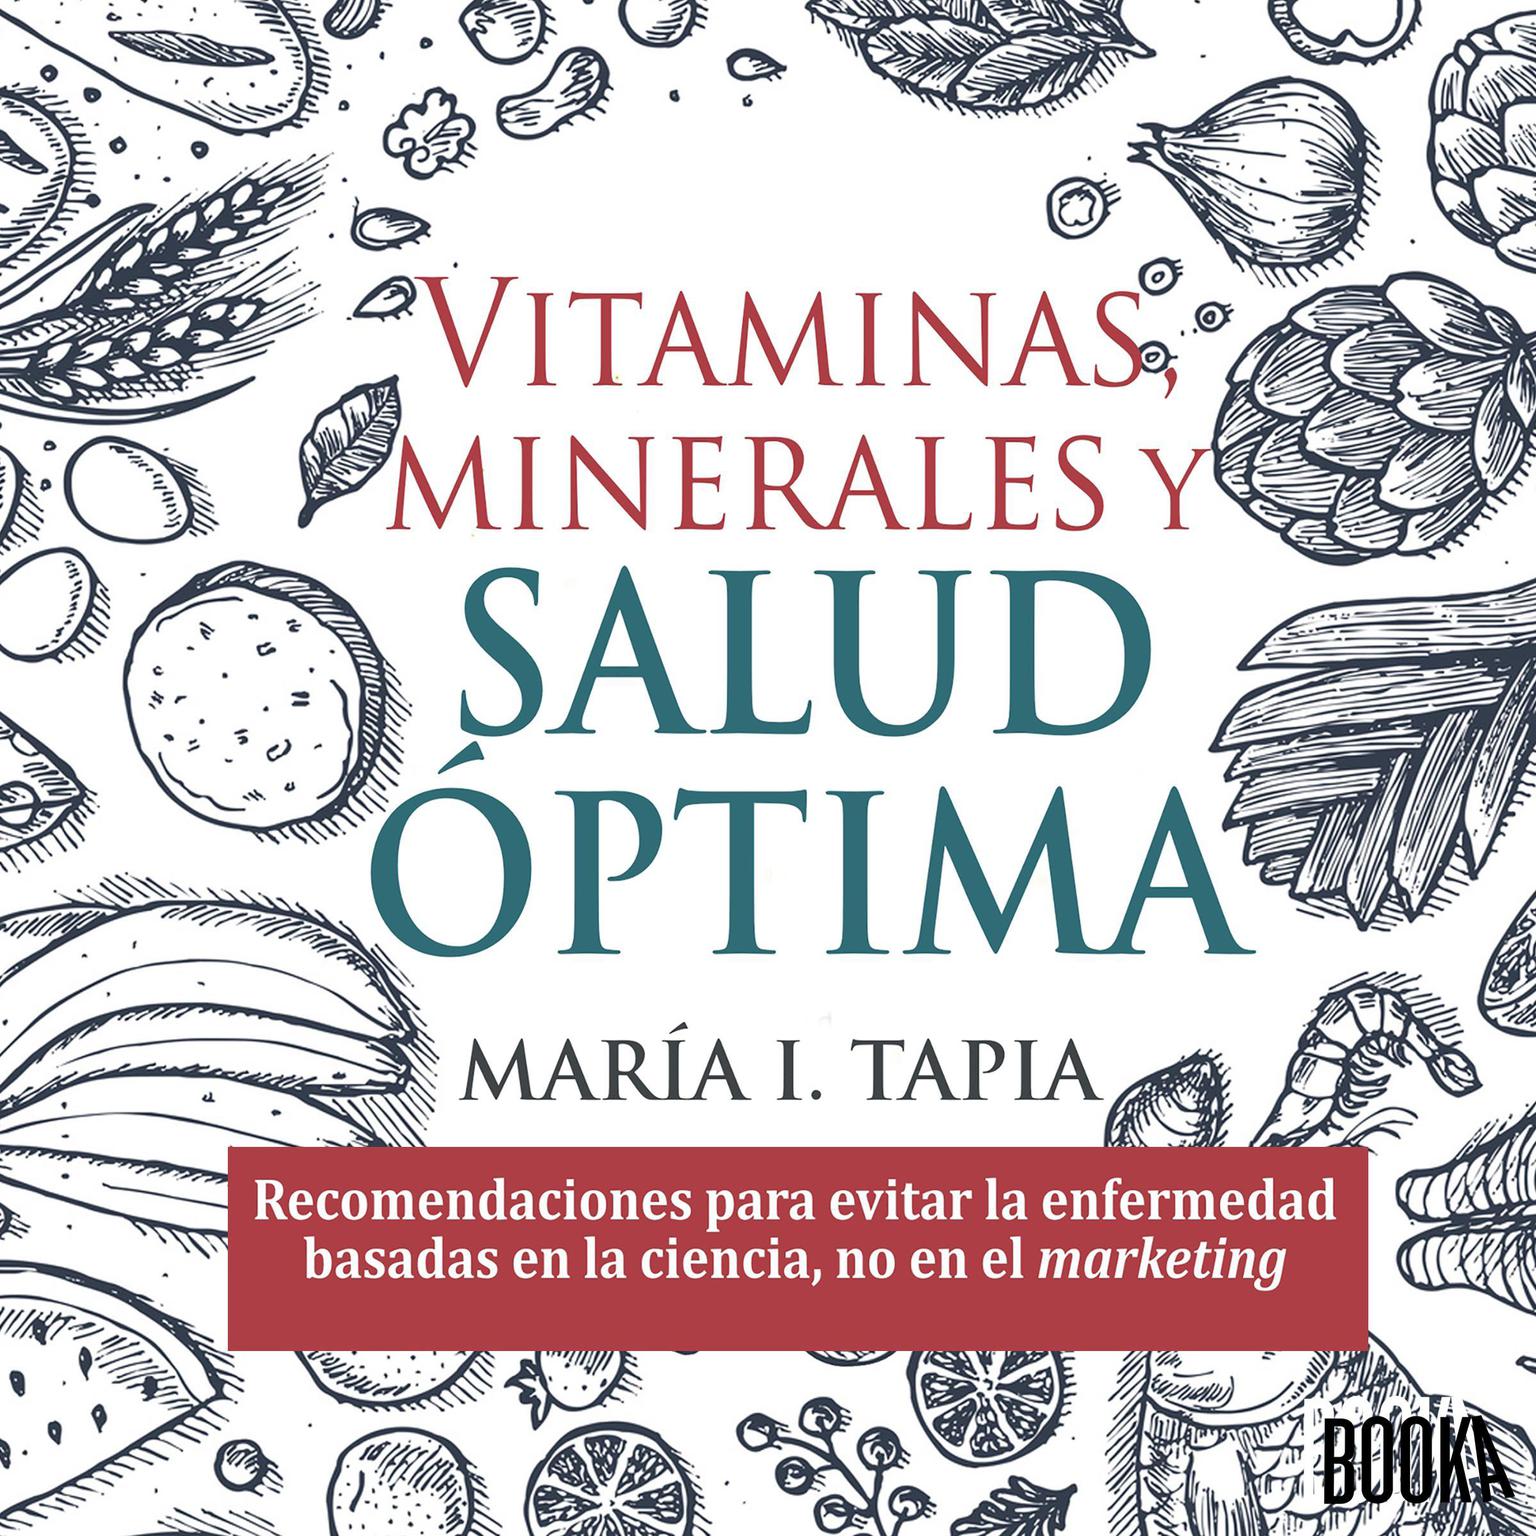 Vitaminas, minerales y salud optima: Recomendaciones para evitar la enfermedad basadas en la ciencia, no en el marketing Audiobook, by Maria I. Tapia